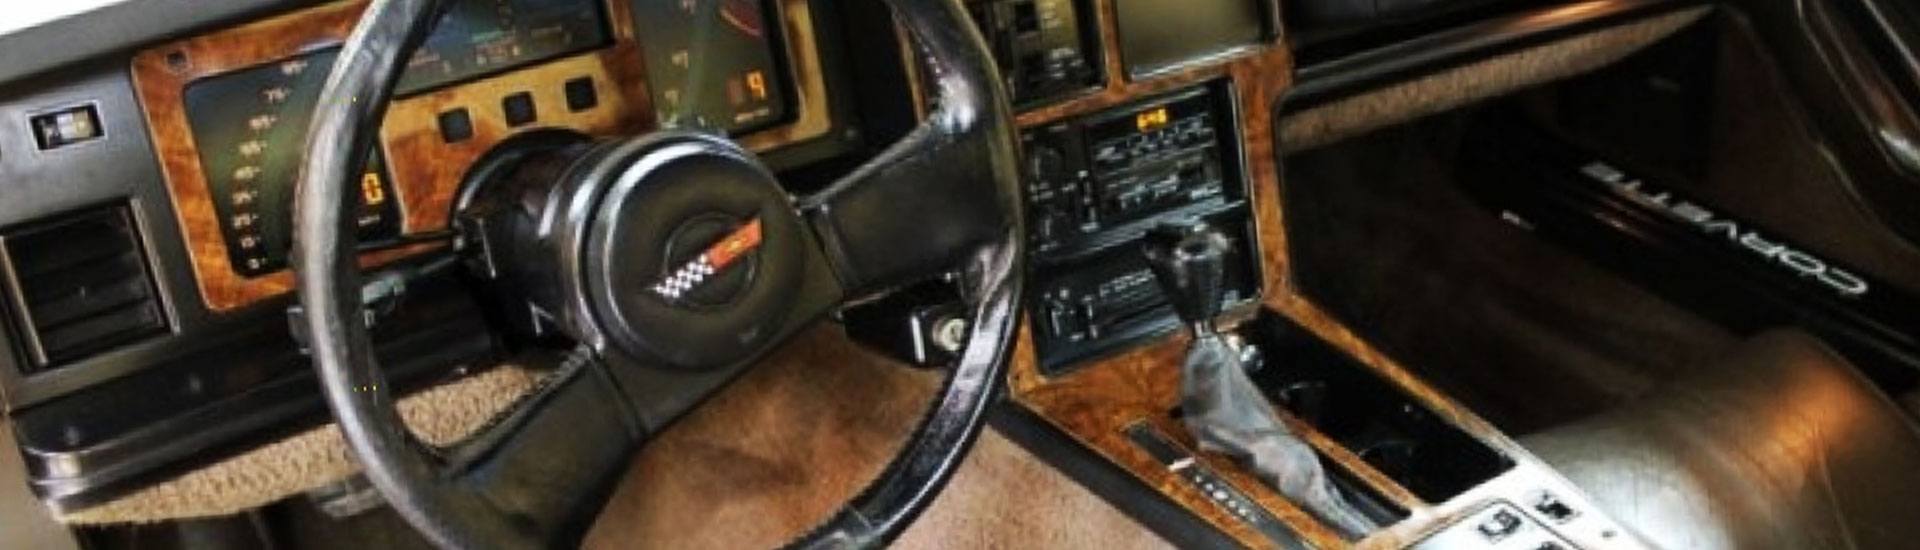 1984 Chevrolet Corvette Dash Kits